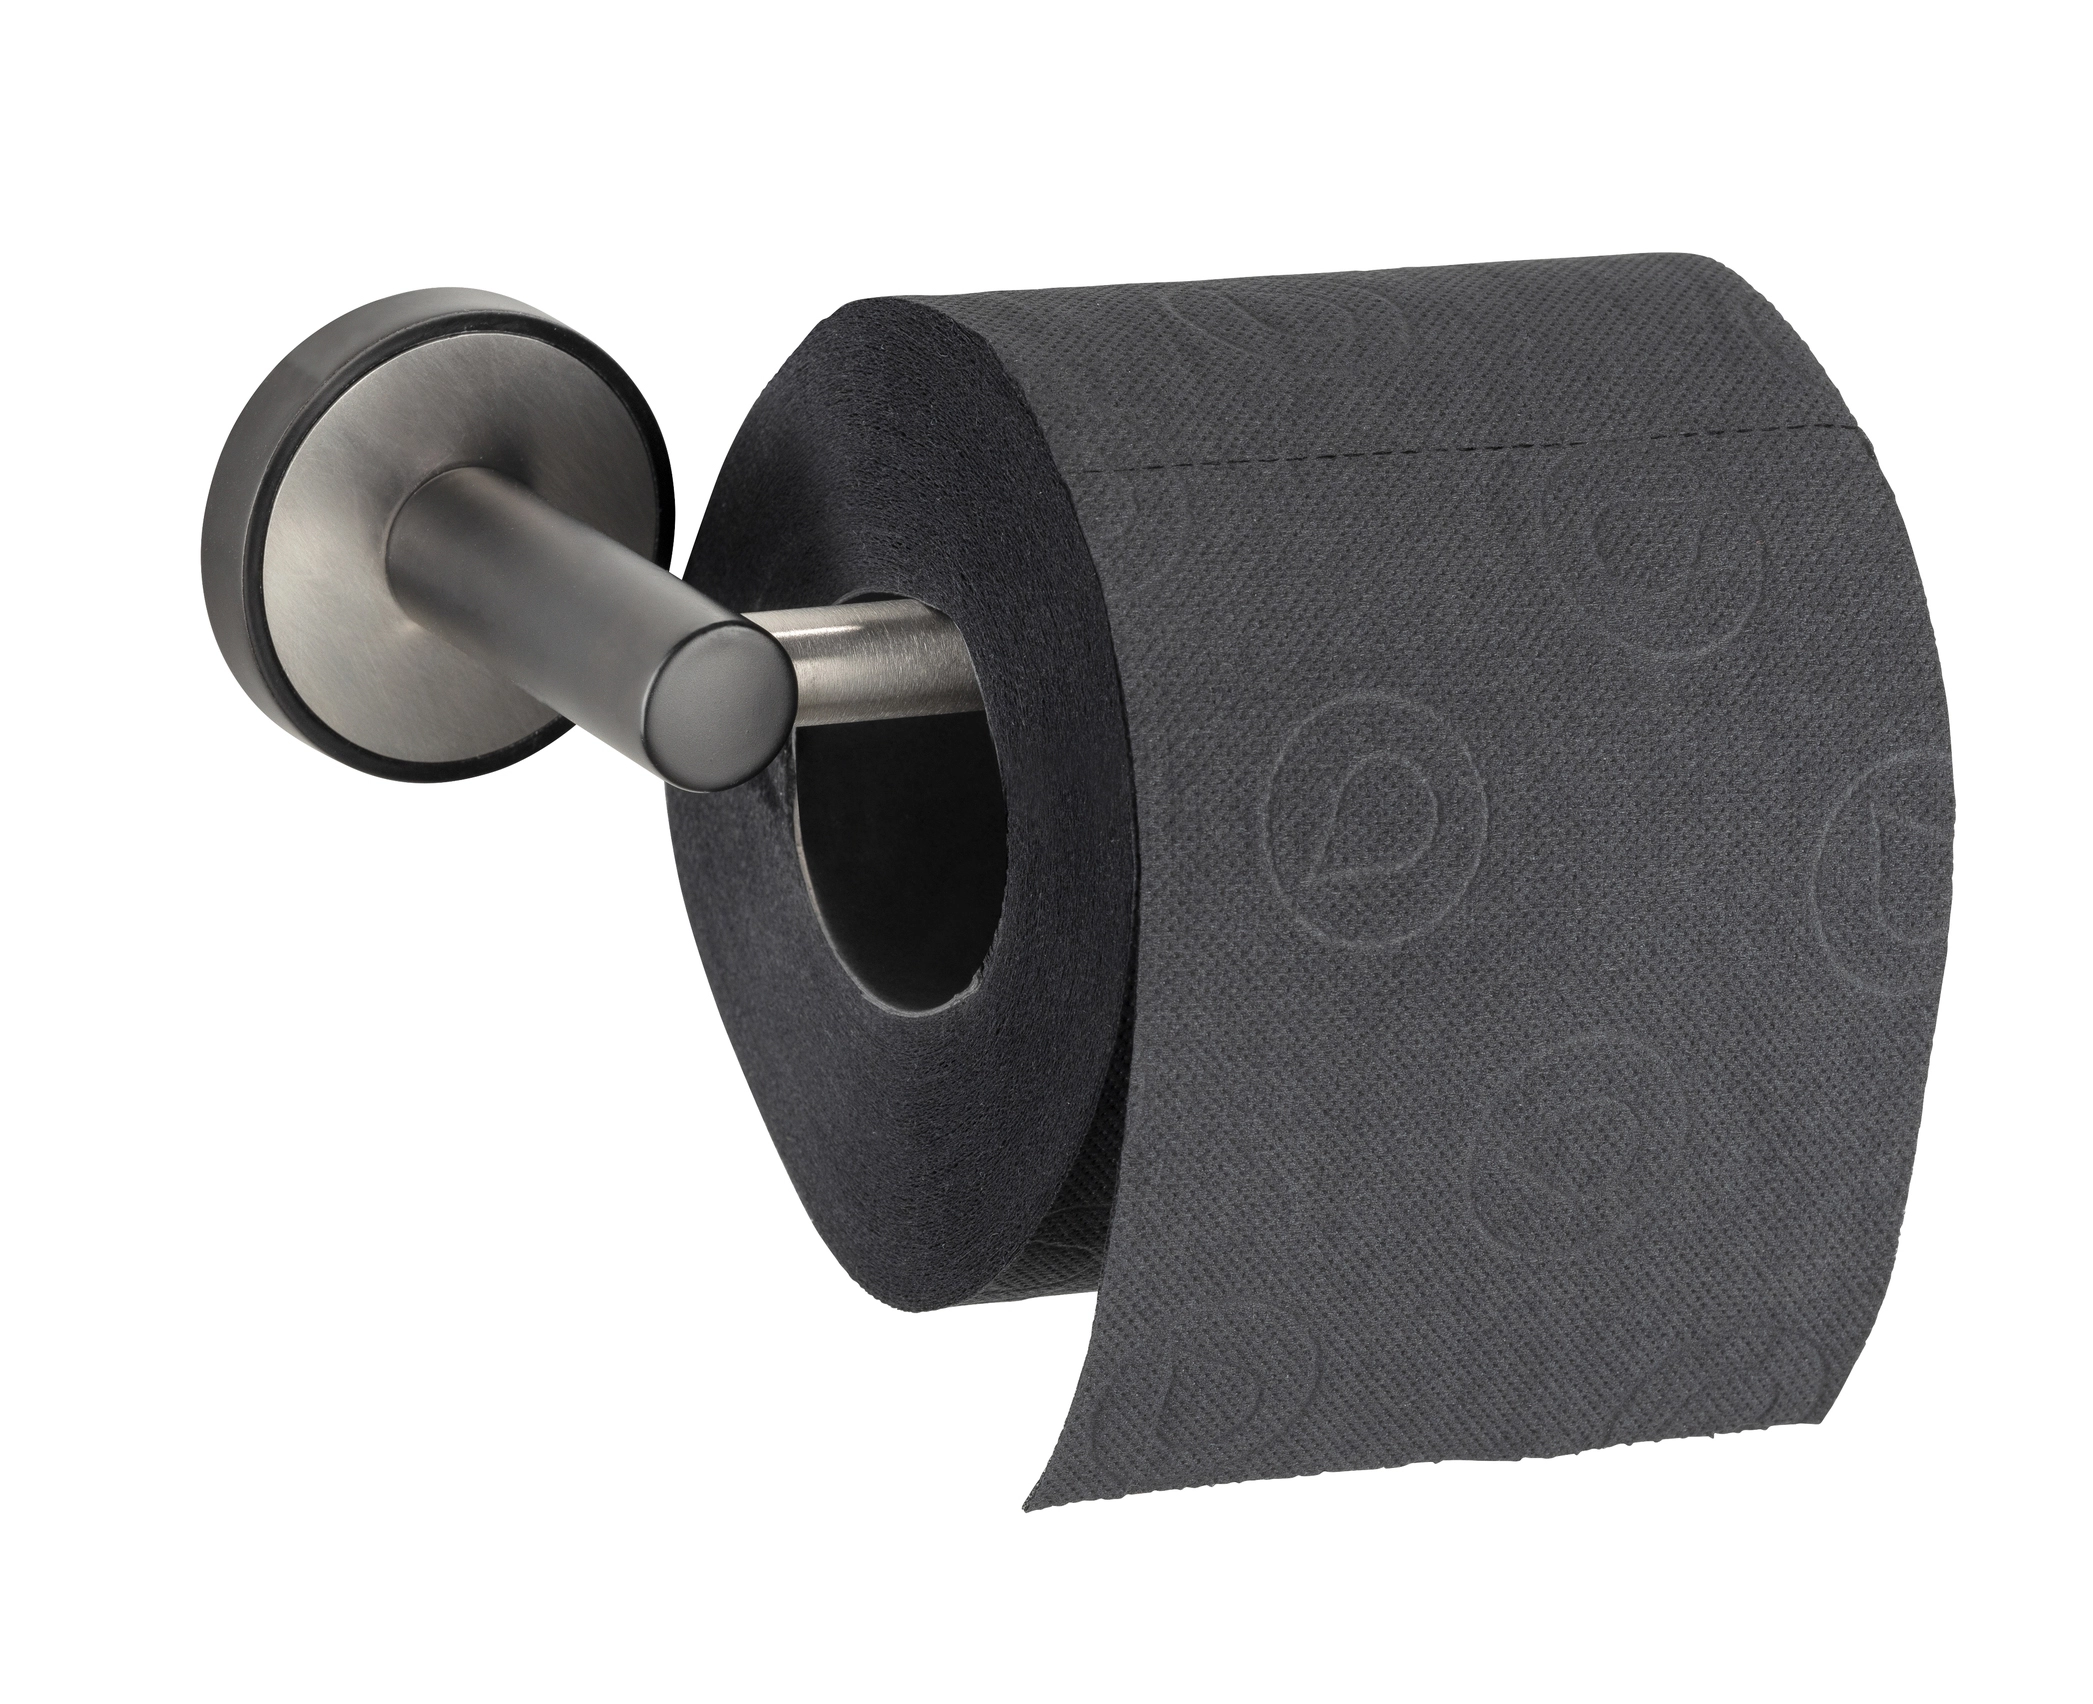 Wenko Toilettenpapierhalter Udine UV-Loc® Silber Matt kaufen bei OBI | Toilettenpapierhalter